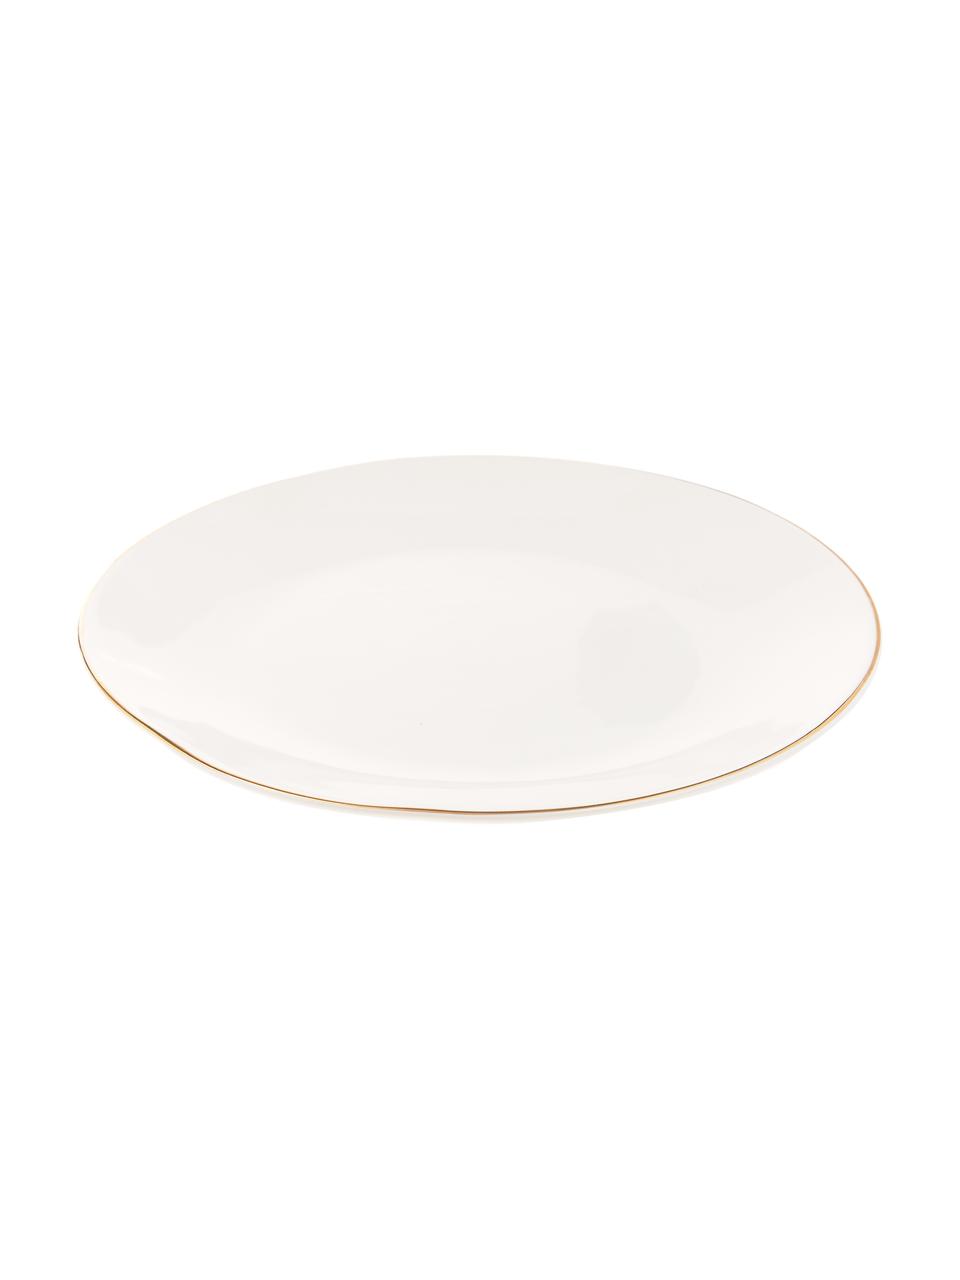 Ručně vyrobený talíř se zlatým okrajem Allure, 6 ks, Keramika, Bílá, zlatá, Ø 26 cm